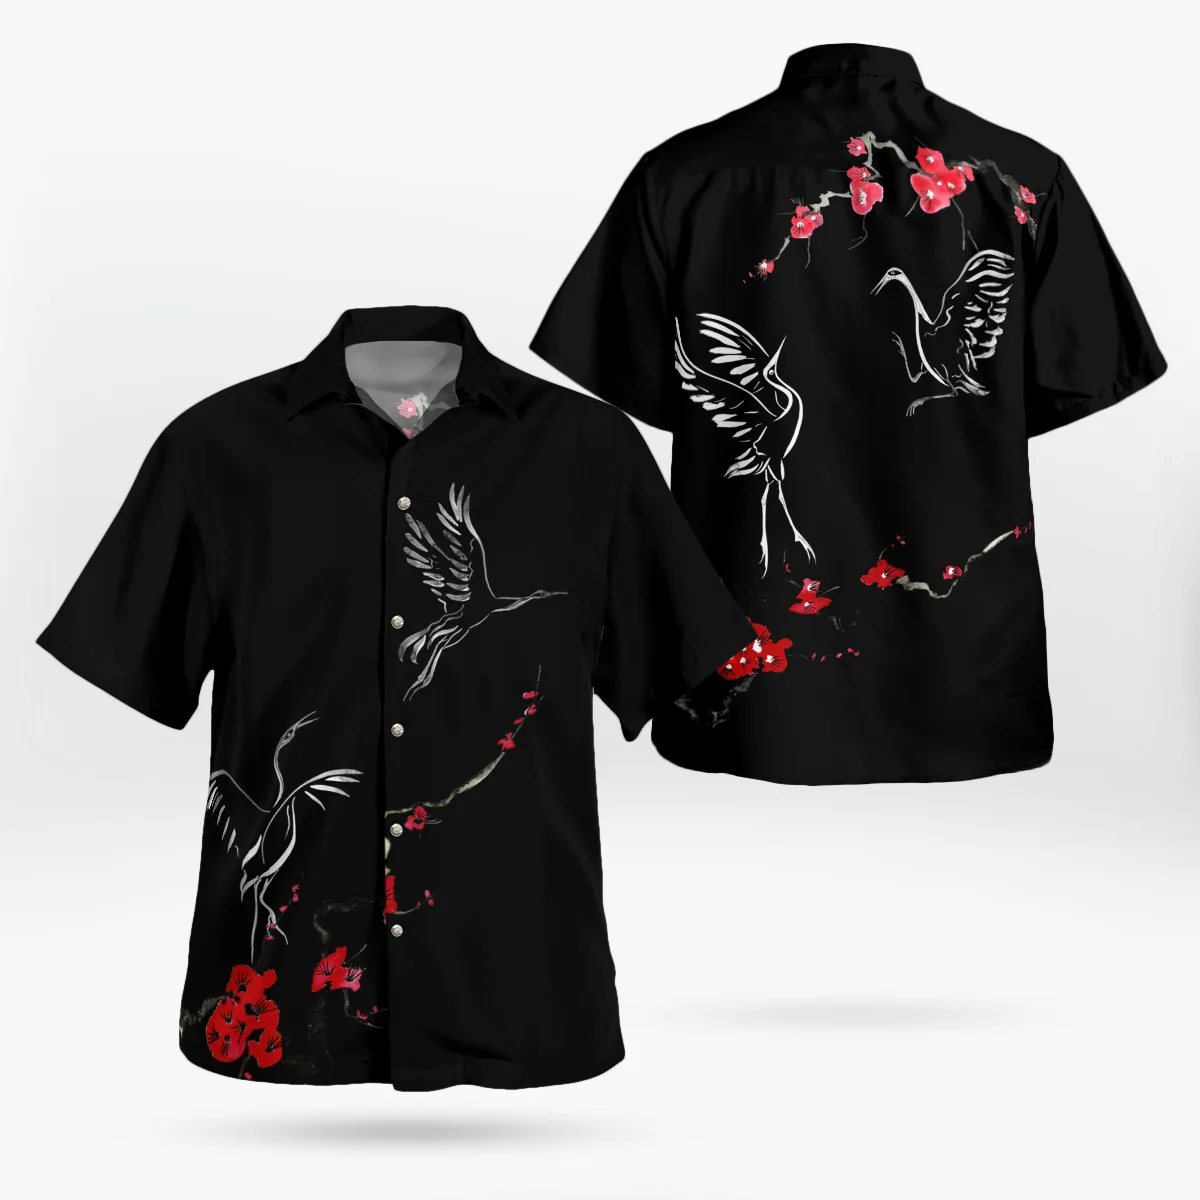 2023 New 3D printed psychedelic Hawaiian shirt men's summer short sleeve beach shirt men's shirt Camisa men's shirt 5XL